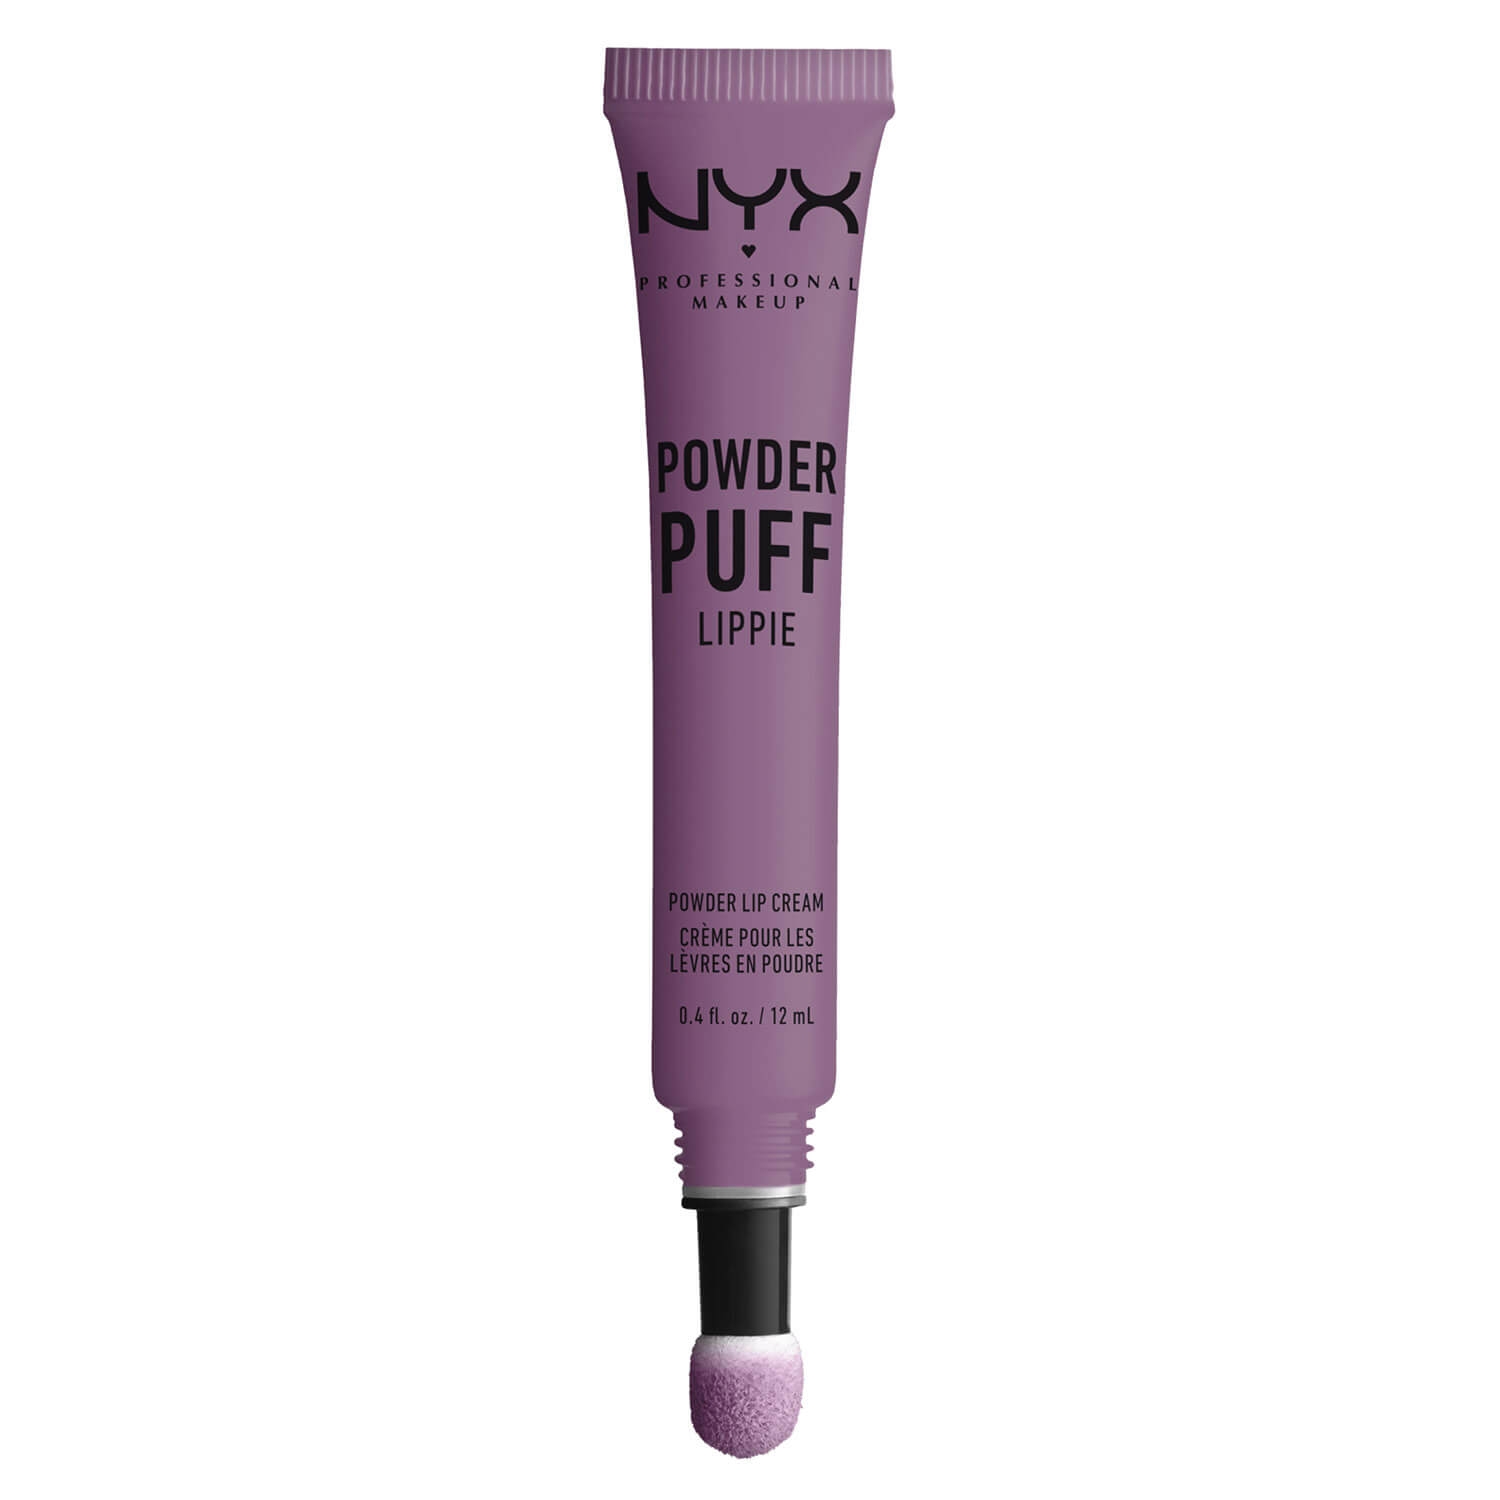 Produktbild von Powder Puff Lippie - Lip Cream Will Power